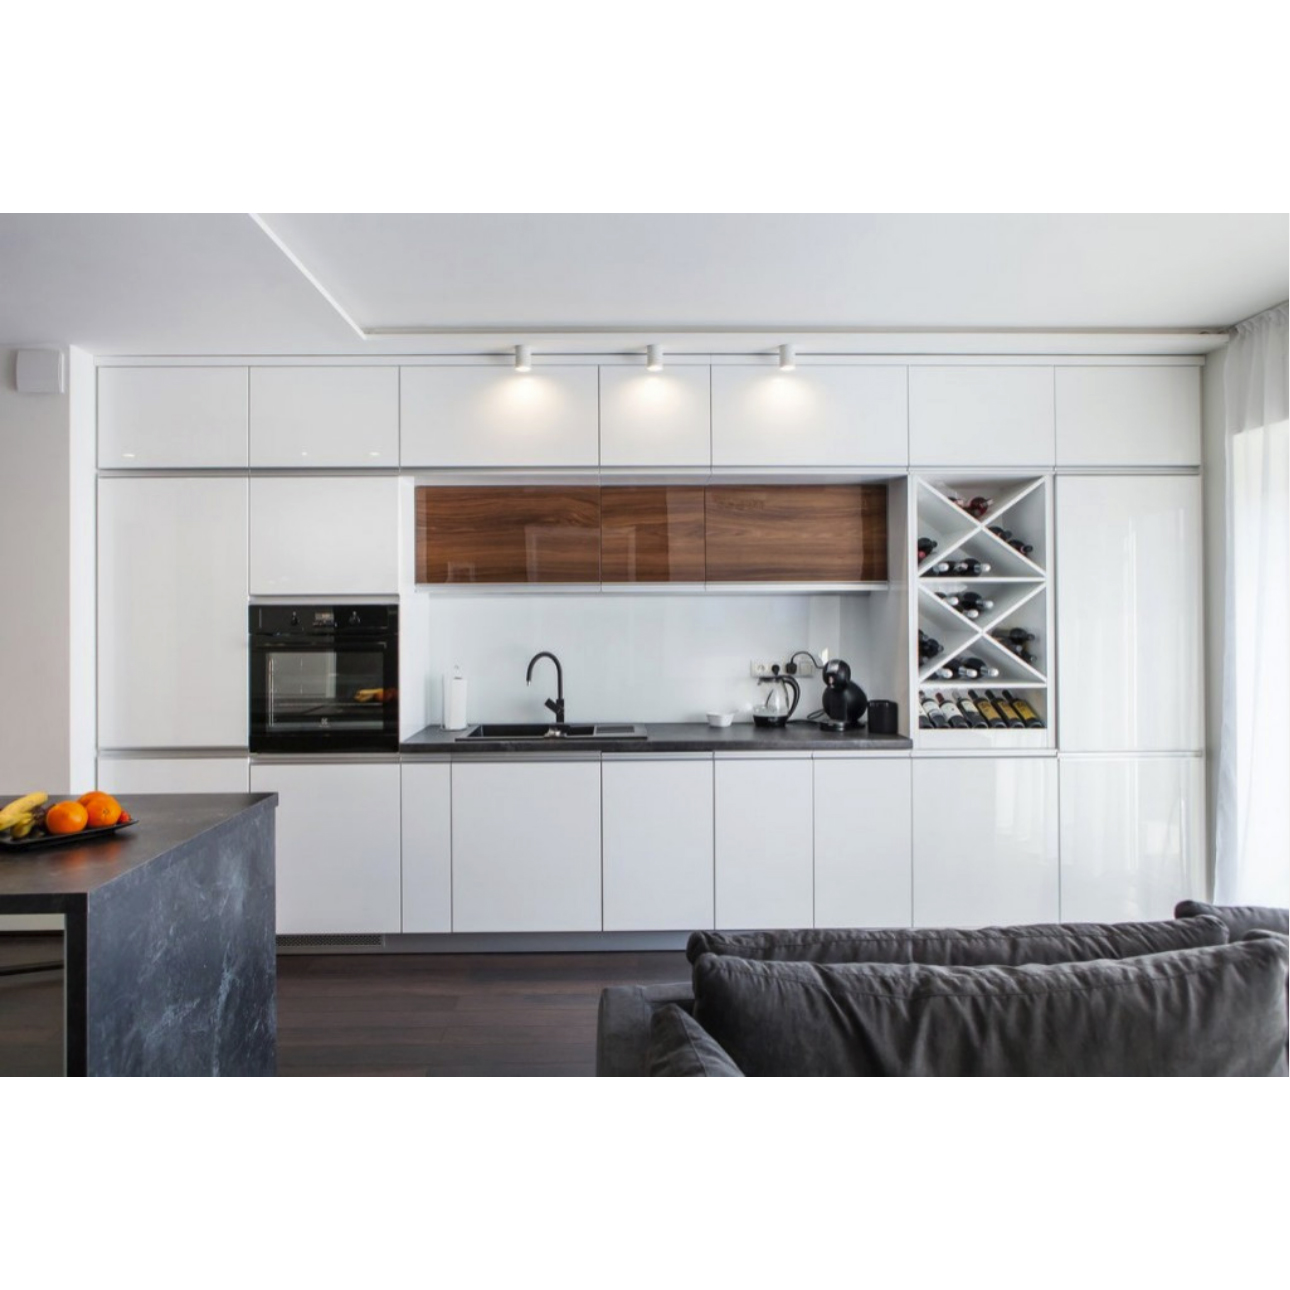 AisDecor cheap lacquer kitchen cabinet wholesale-2